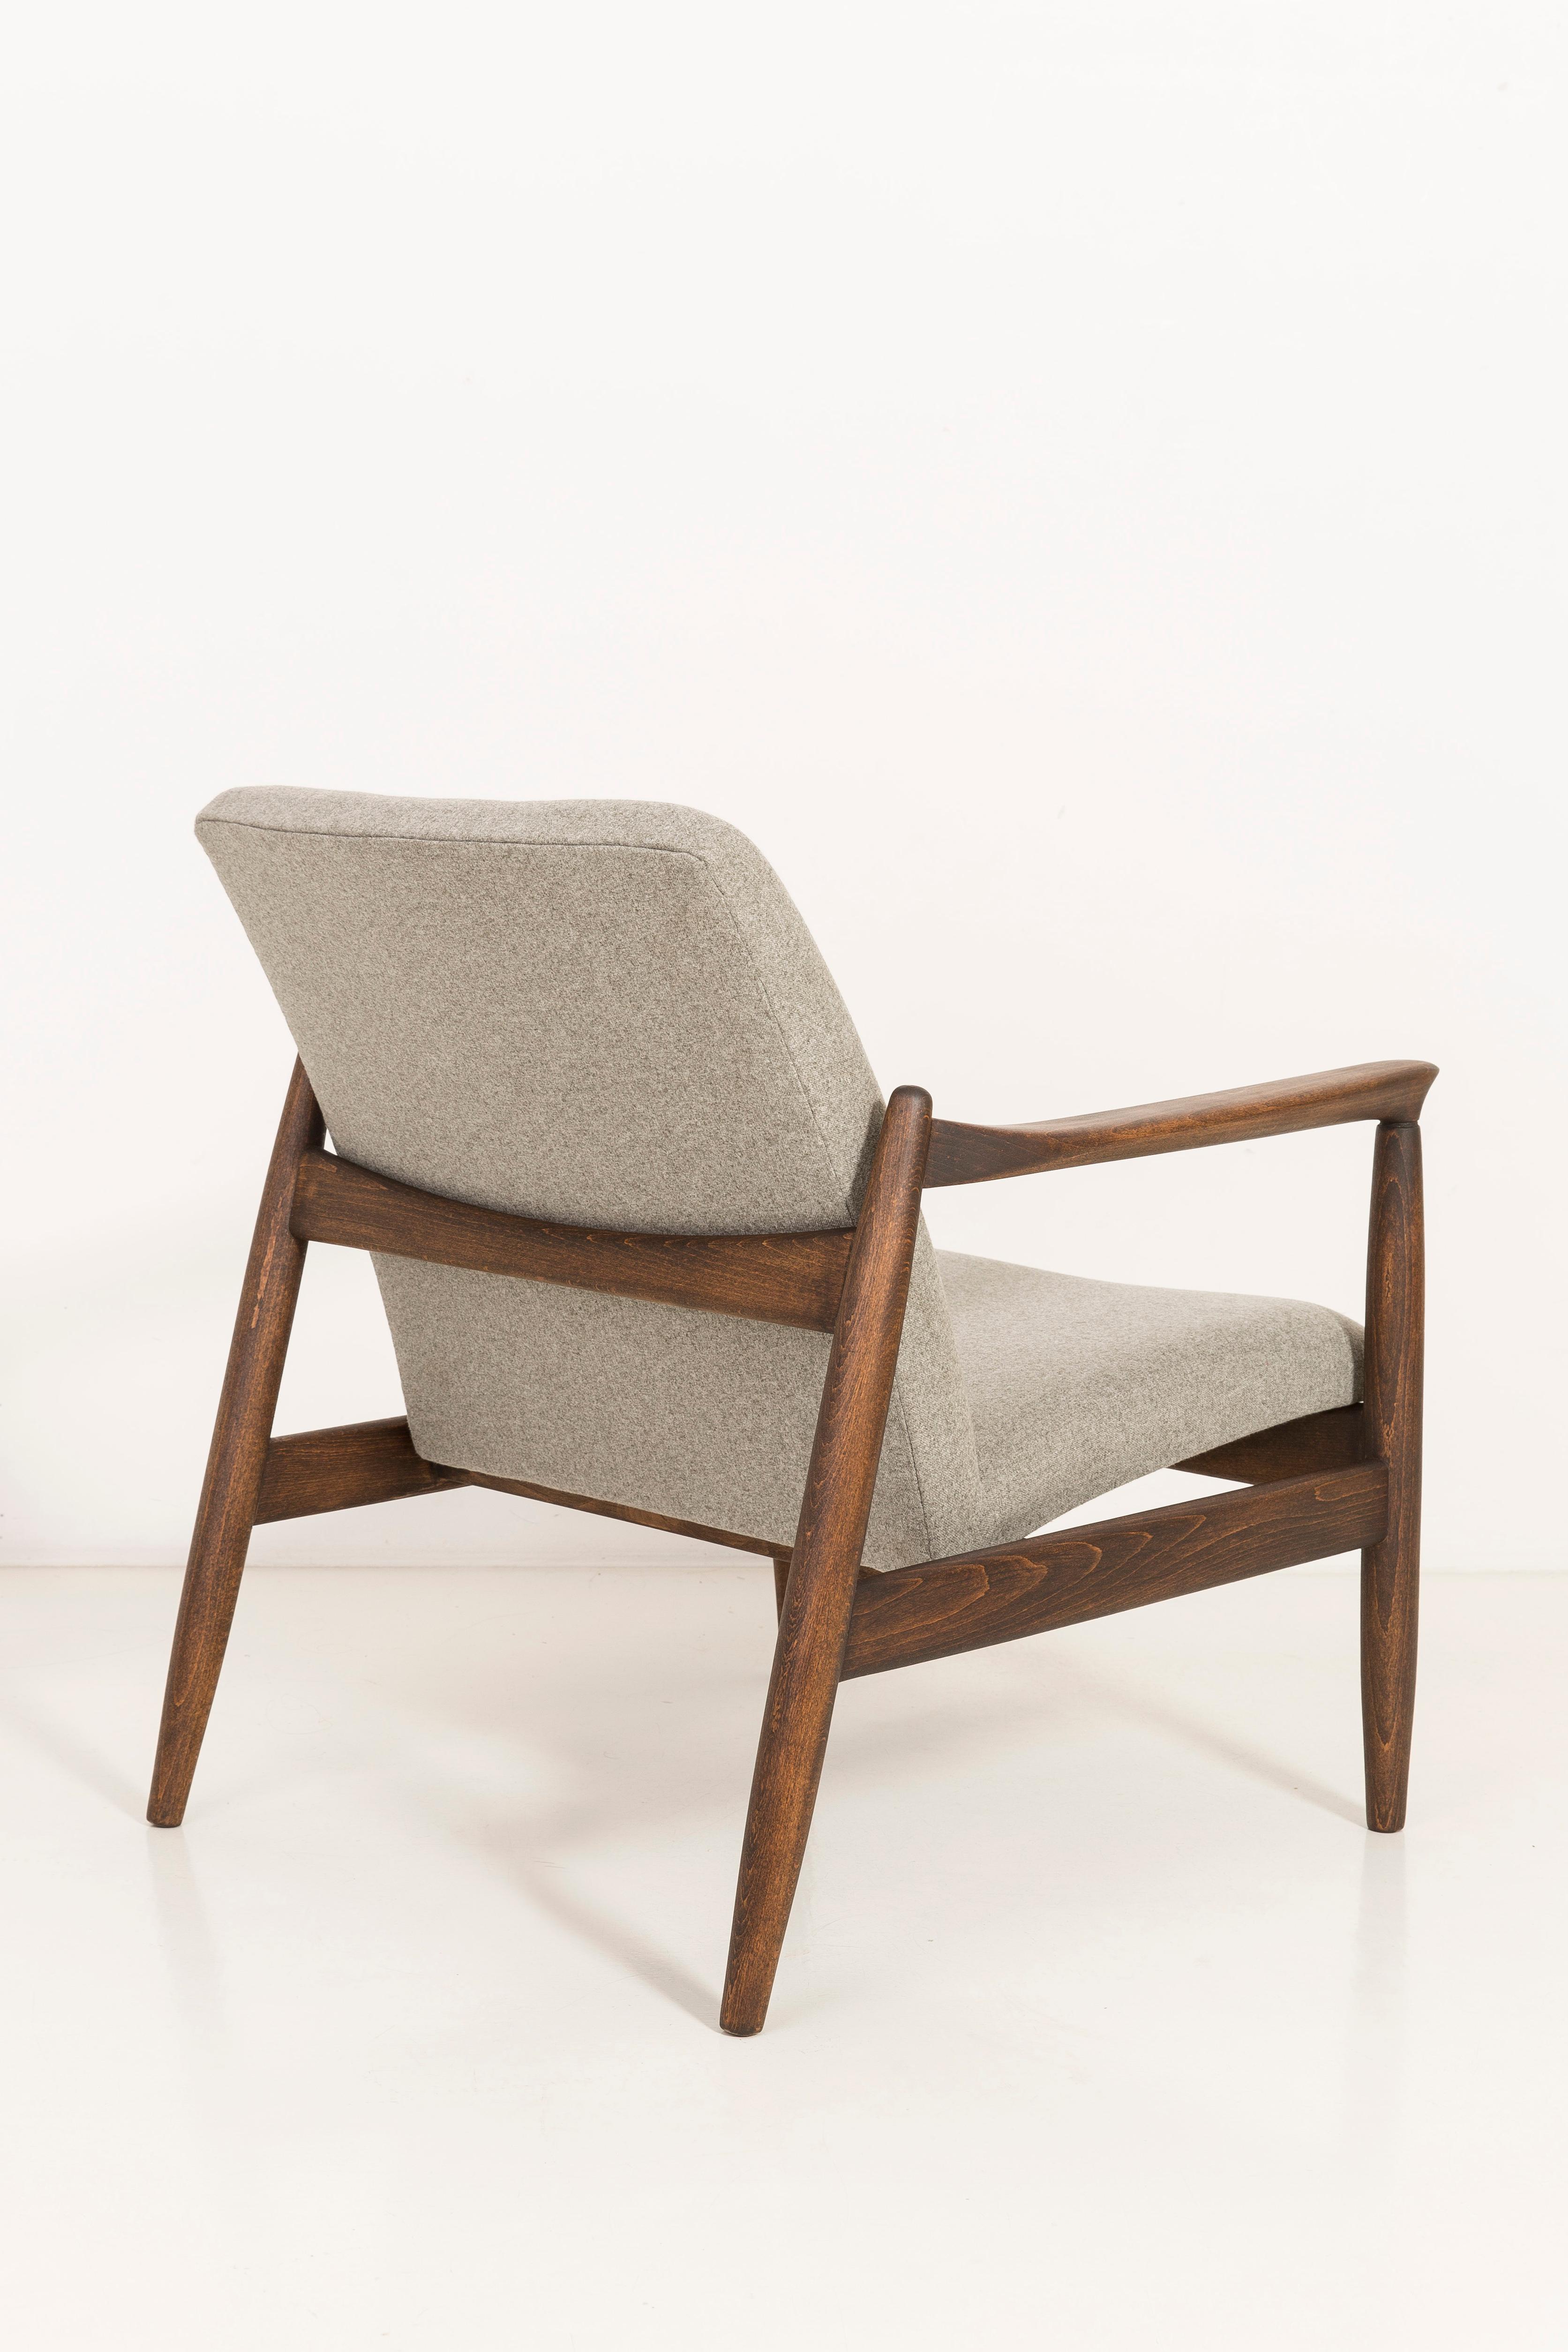 20th Century Mid-Century Modern Beige Armchair, Edmund Homa, 1960s For Sale